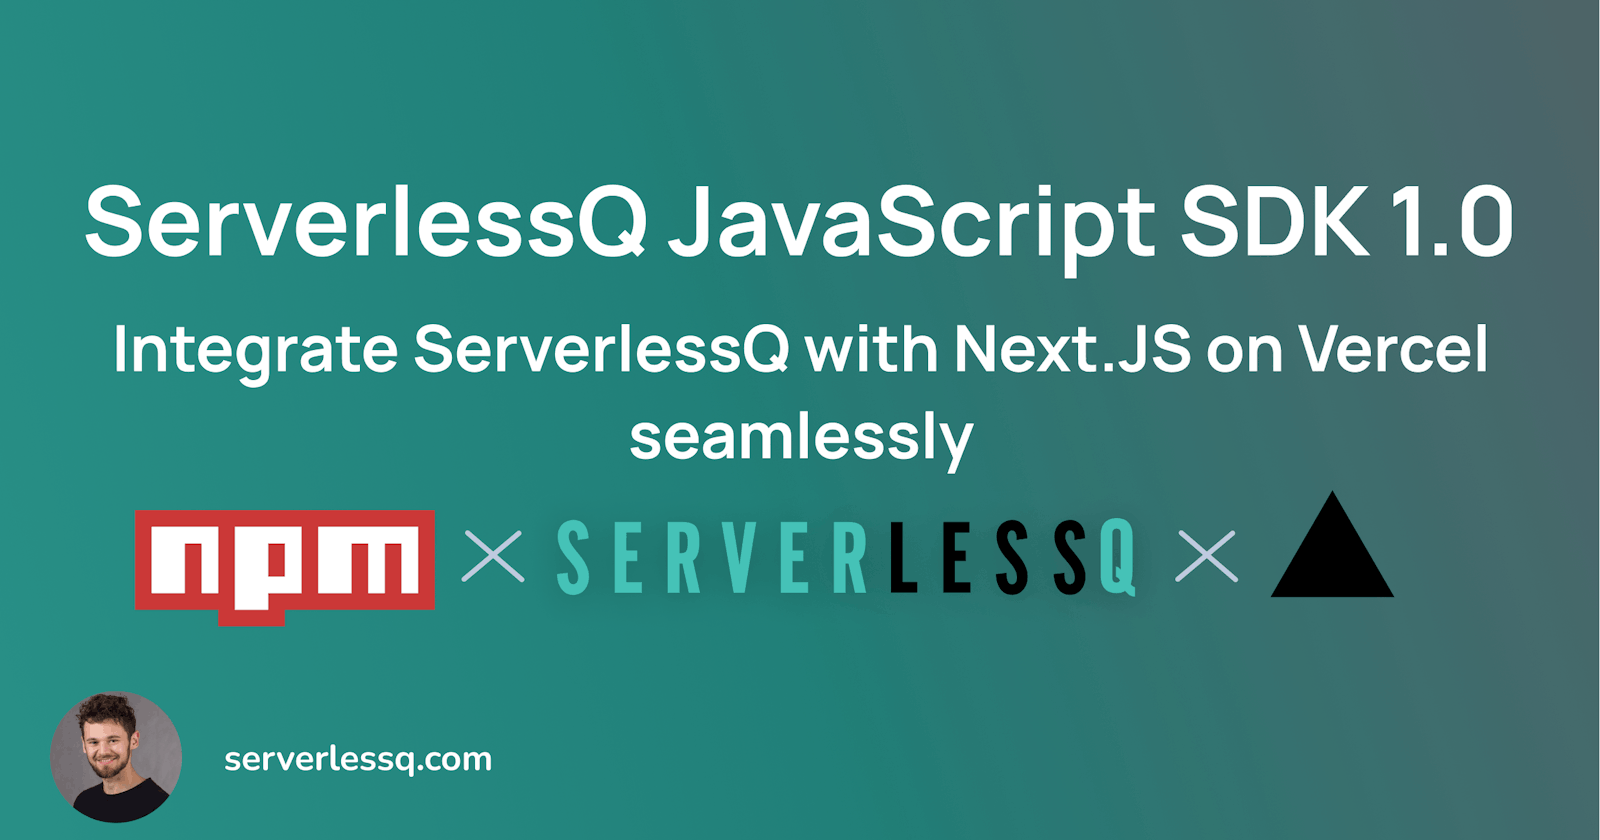 ServerlessQ JavaScript SDK 1.0